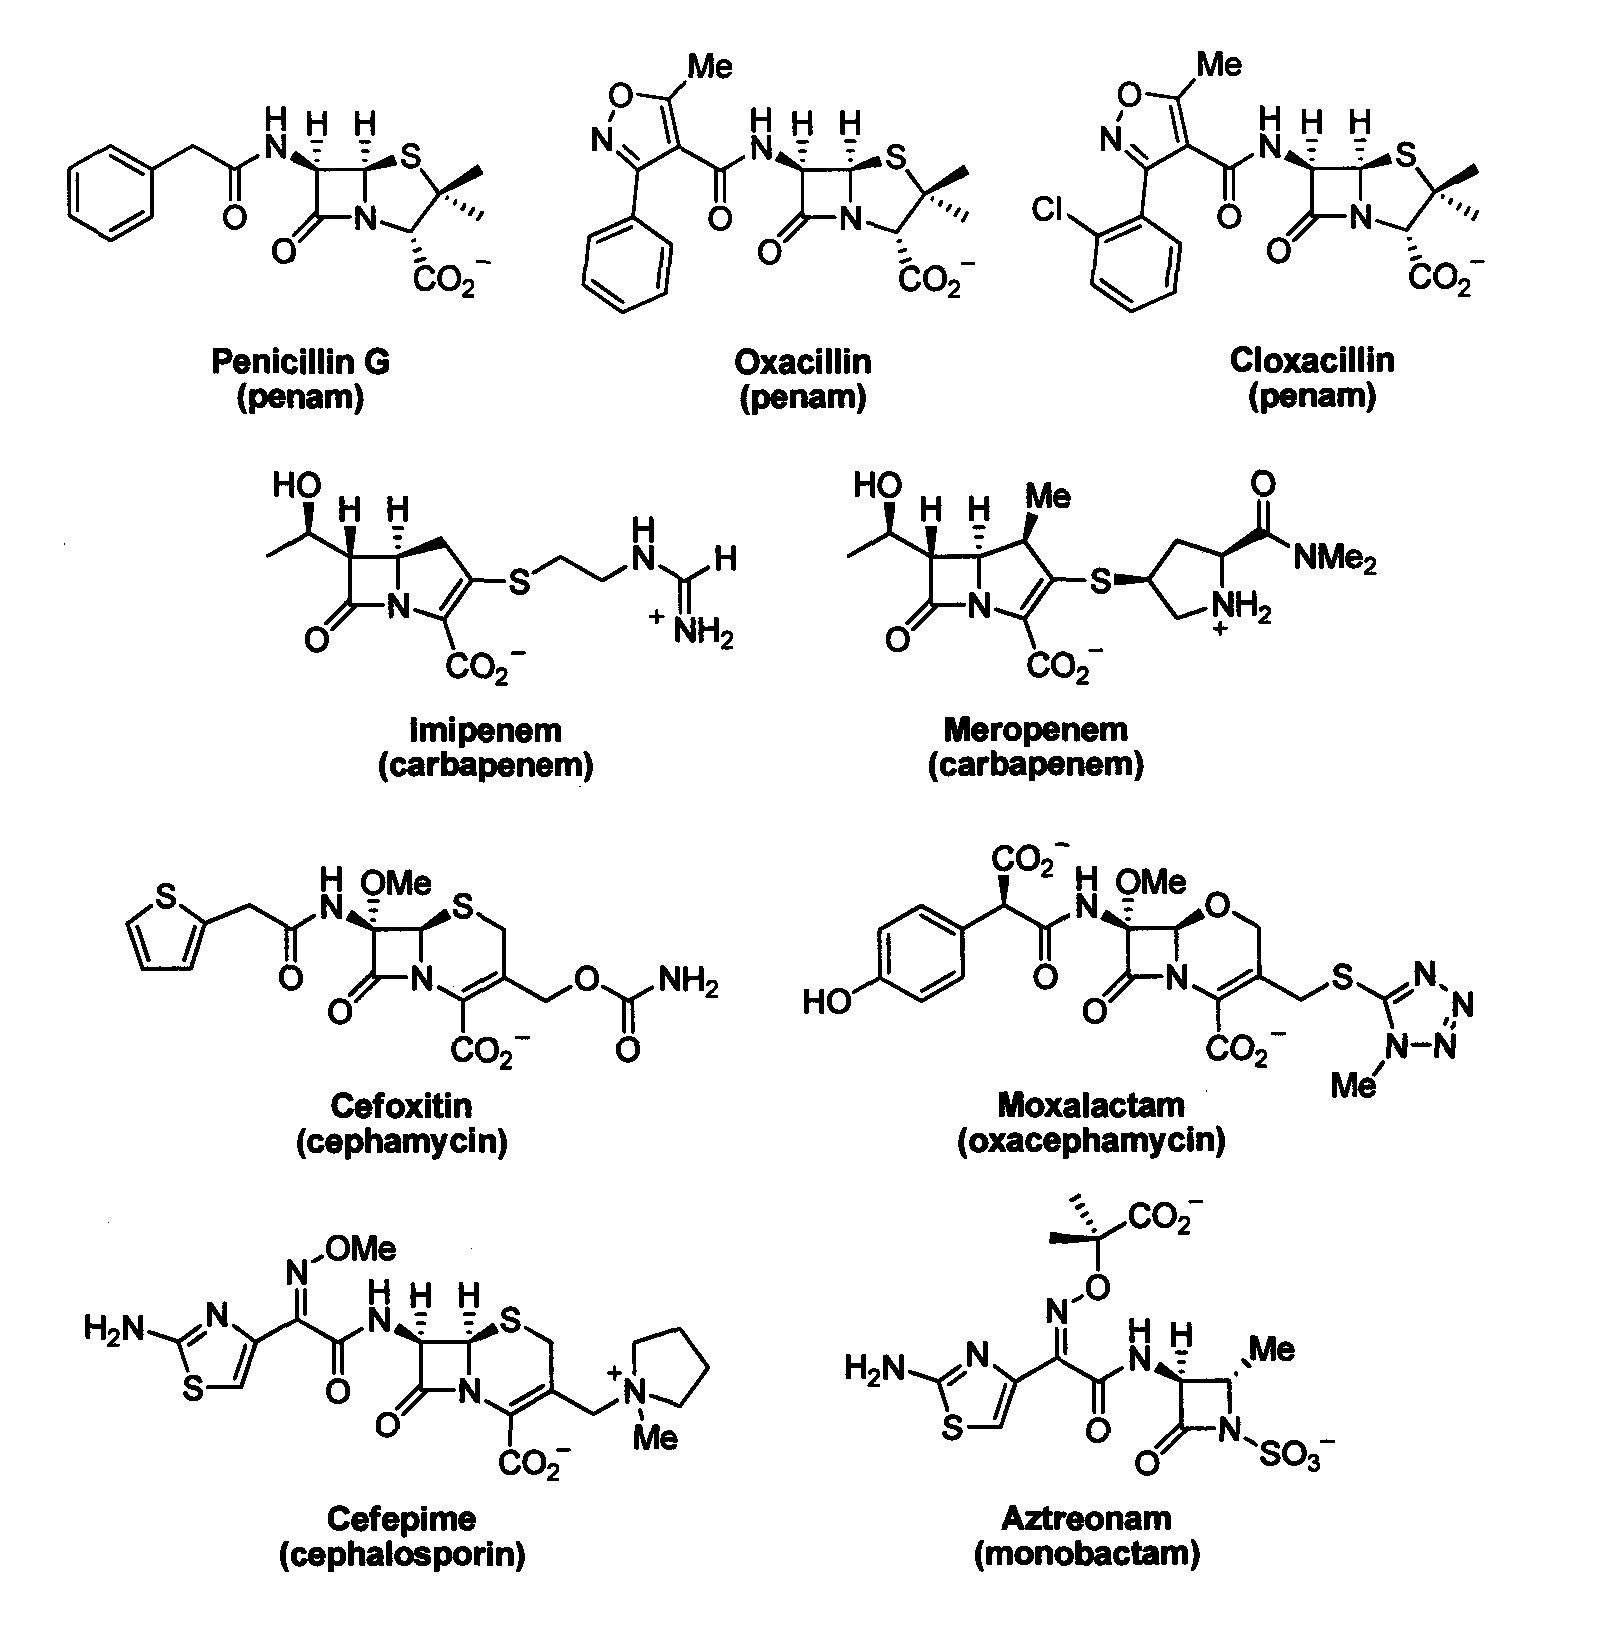 Bate-lactamase inhibitors